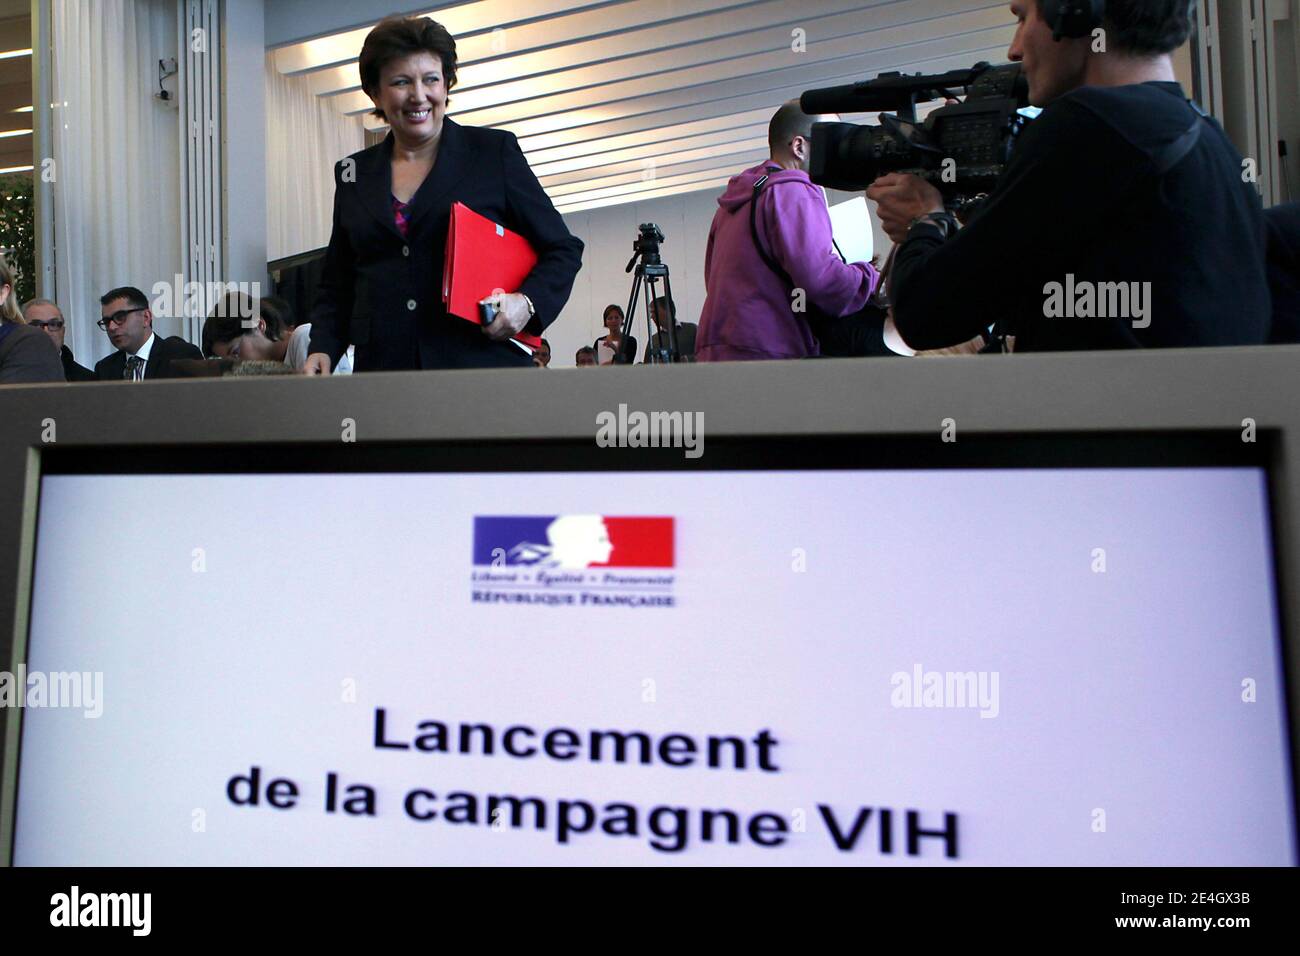 La ministre française de la Santé, Roselyne Bachelot, tient une conférence de presse sur la lutte contre le VIH/SIDA et les infections sexuellement transmissibles à Paris, le 27 novembre 2009. Photo de Stephane Lemouton/ABACAPRESS.COM Banque D'Images